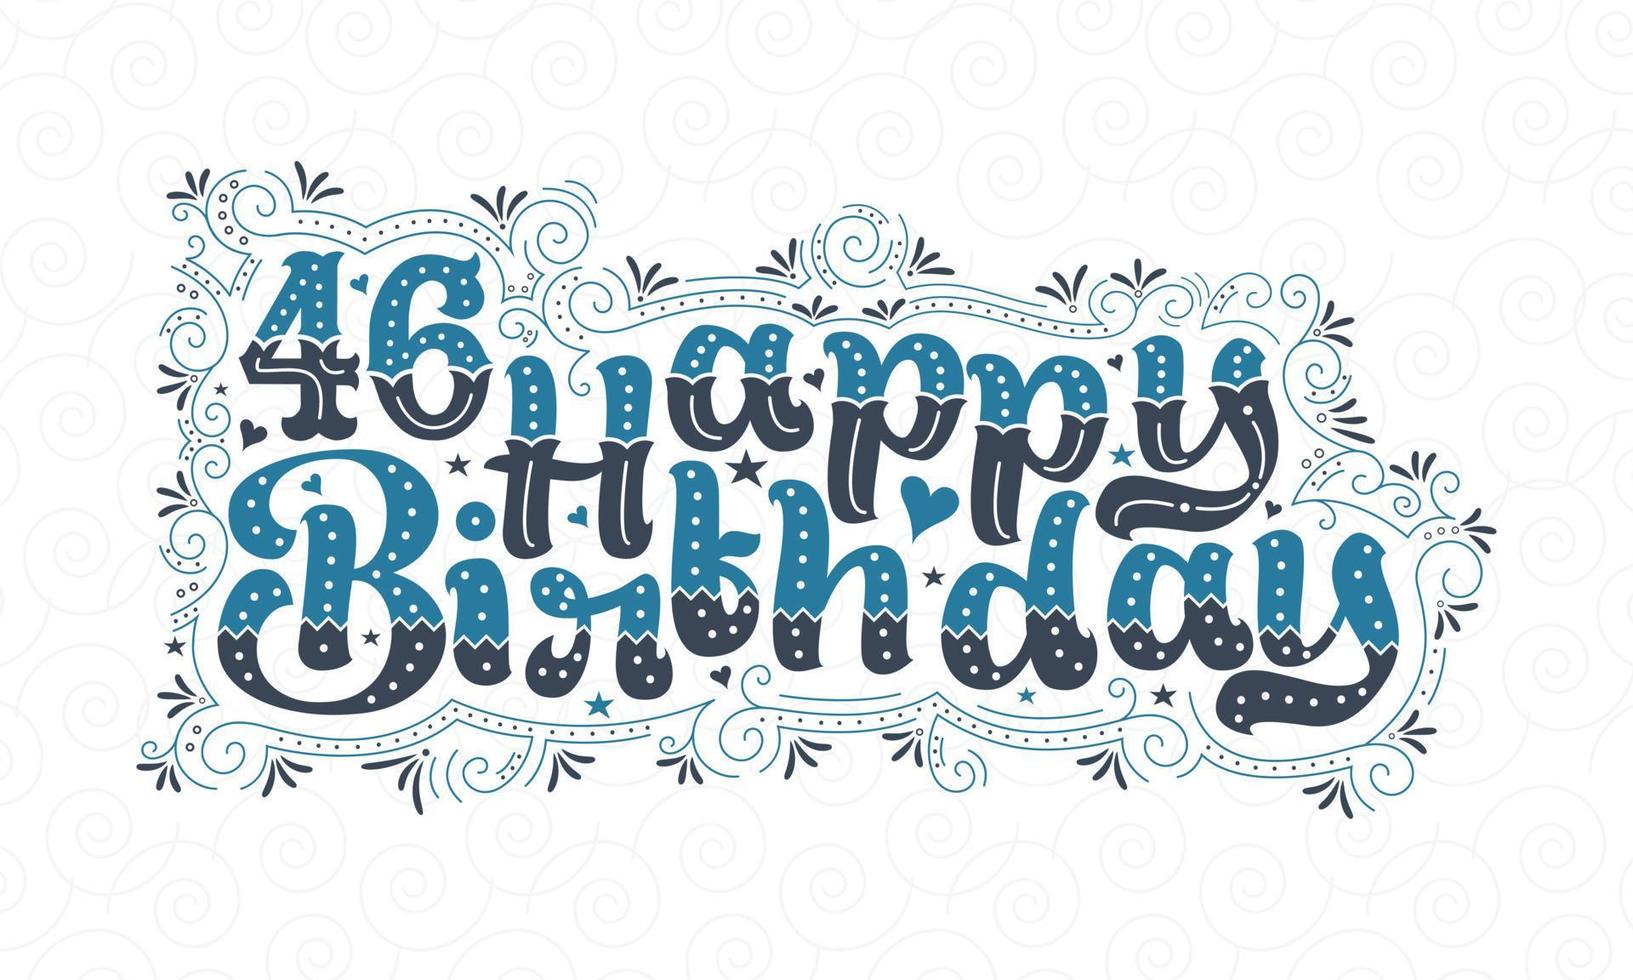 46:e grattis på födelsedagen bokstäver, 46 år födelsedag vacker typografi design med blå och svarta prickar, linjer och blad. vektor